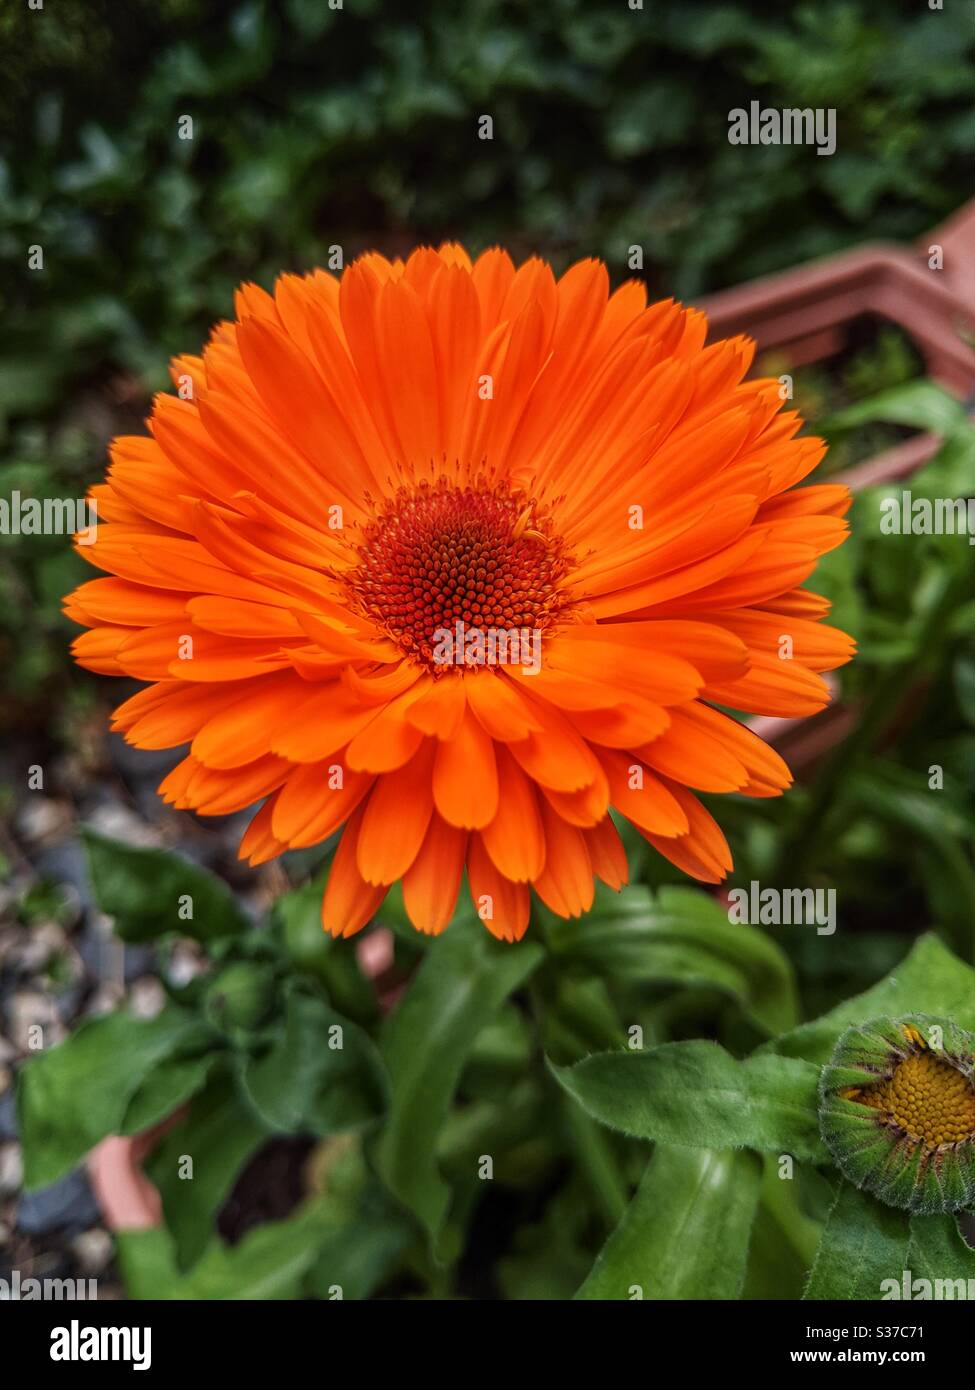 Calendula officinalis or common marigold or scotch marigold flower in home pot garden Stock Photo